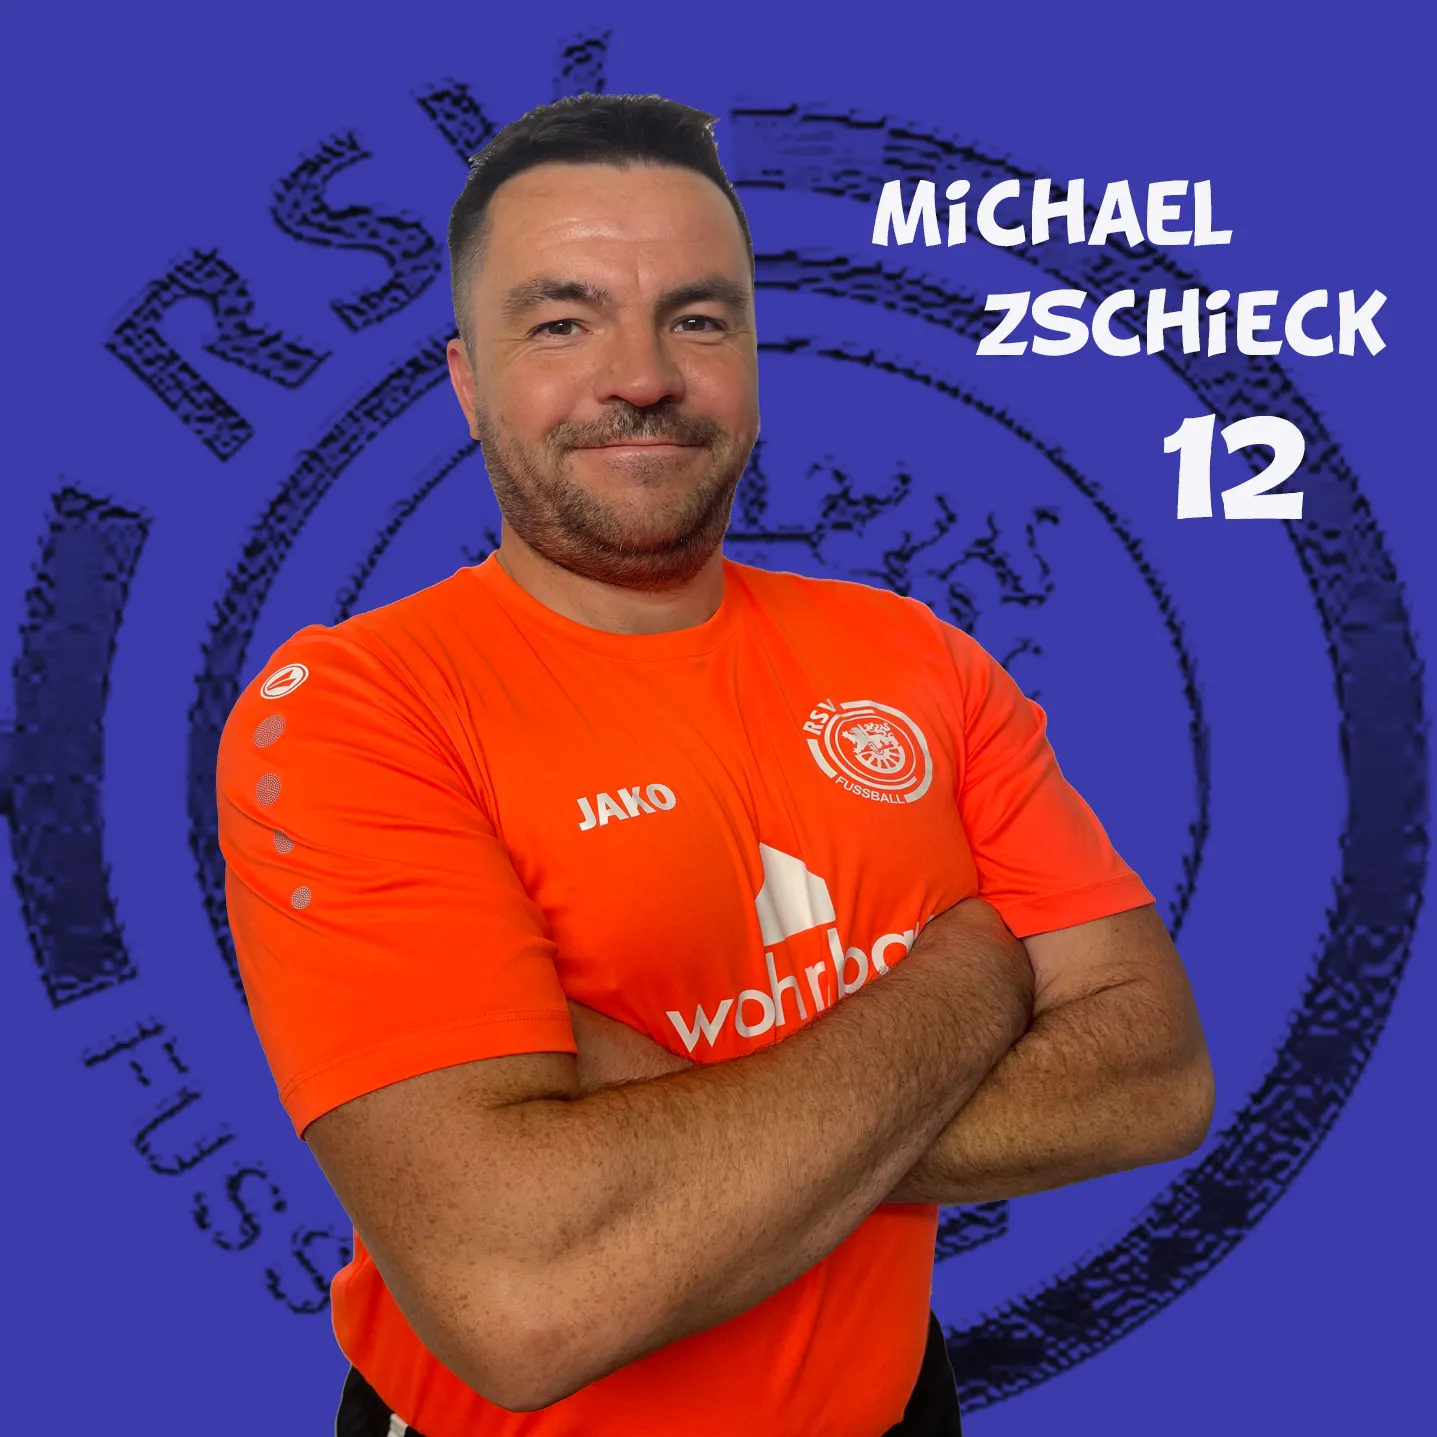 Michael Zschieck